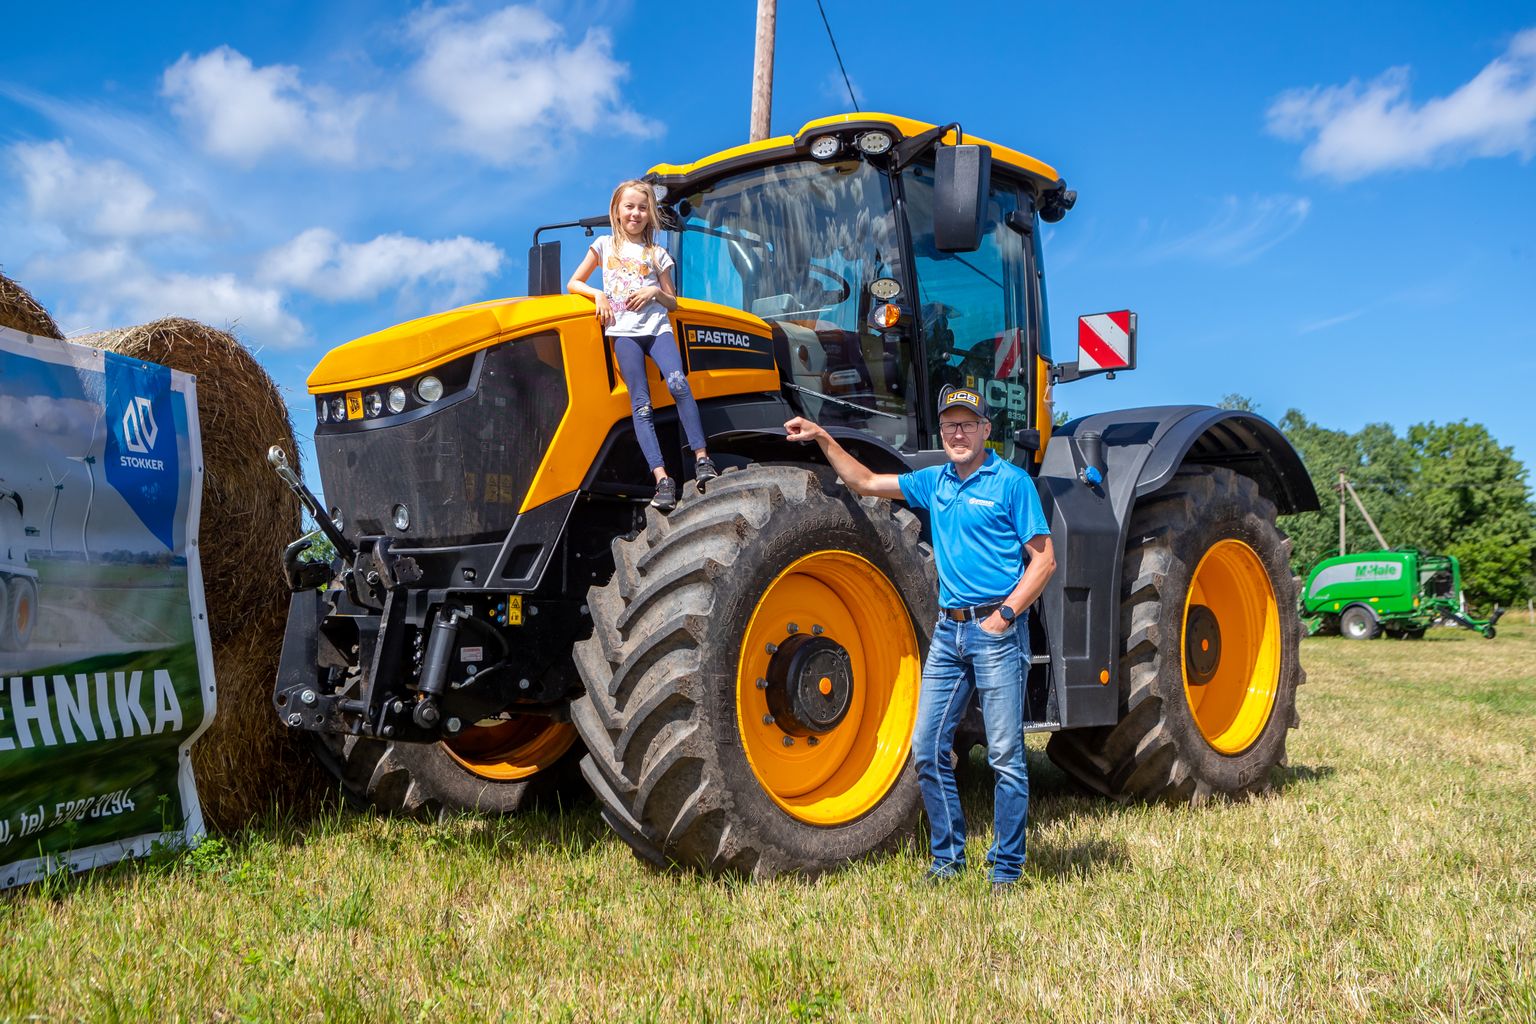 DEMOPÄEVAL: Stokkeri tehnikaesitluse korraldamisel põhilise töö teinud Tanel Aru jäi koos tütar Sofiaga pildile maailma kiireima traktori kõrval.